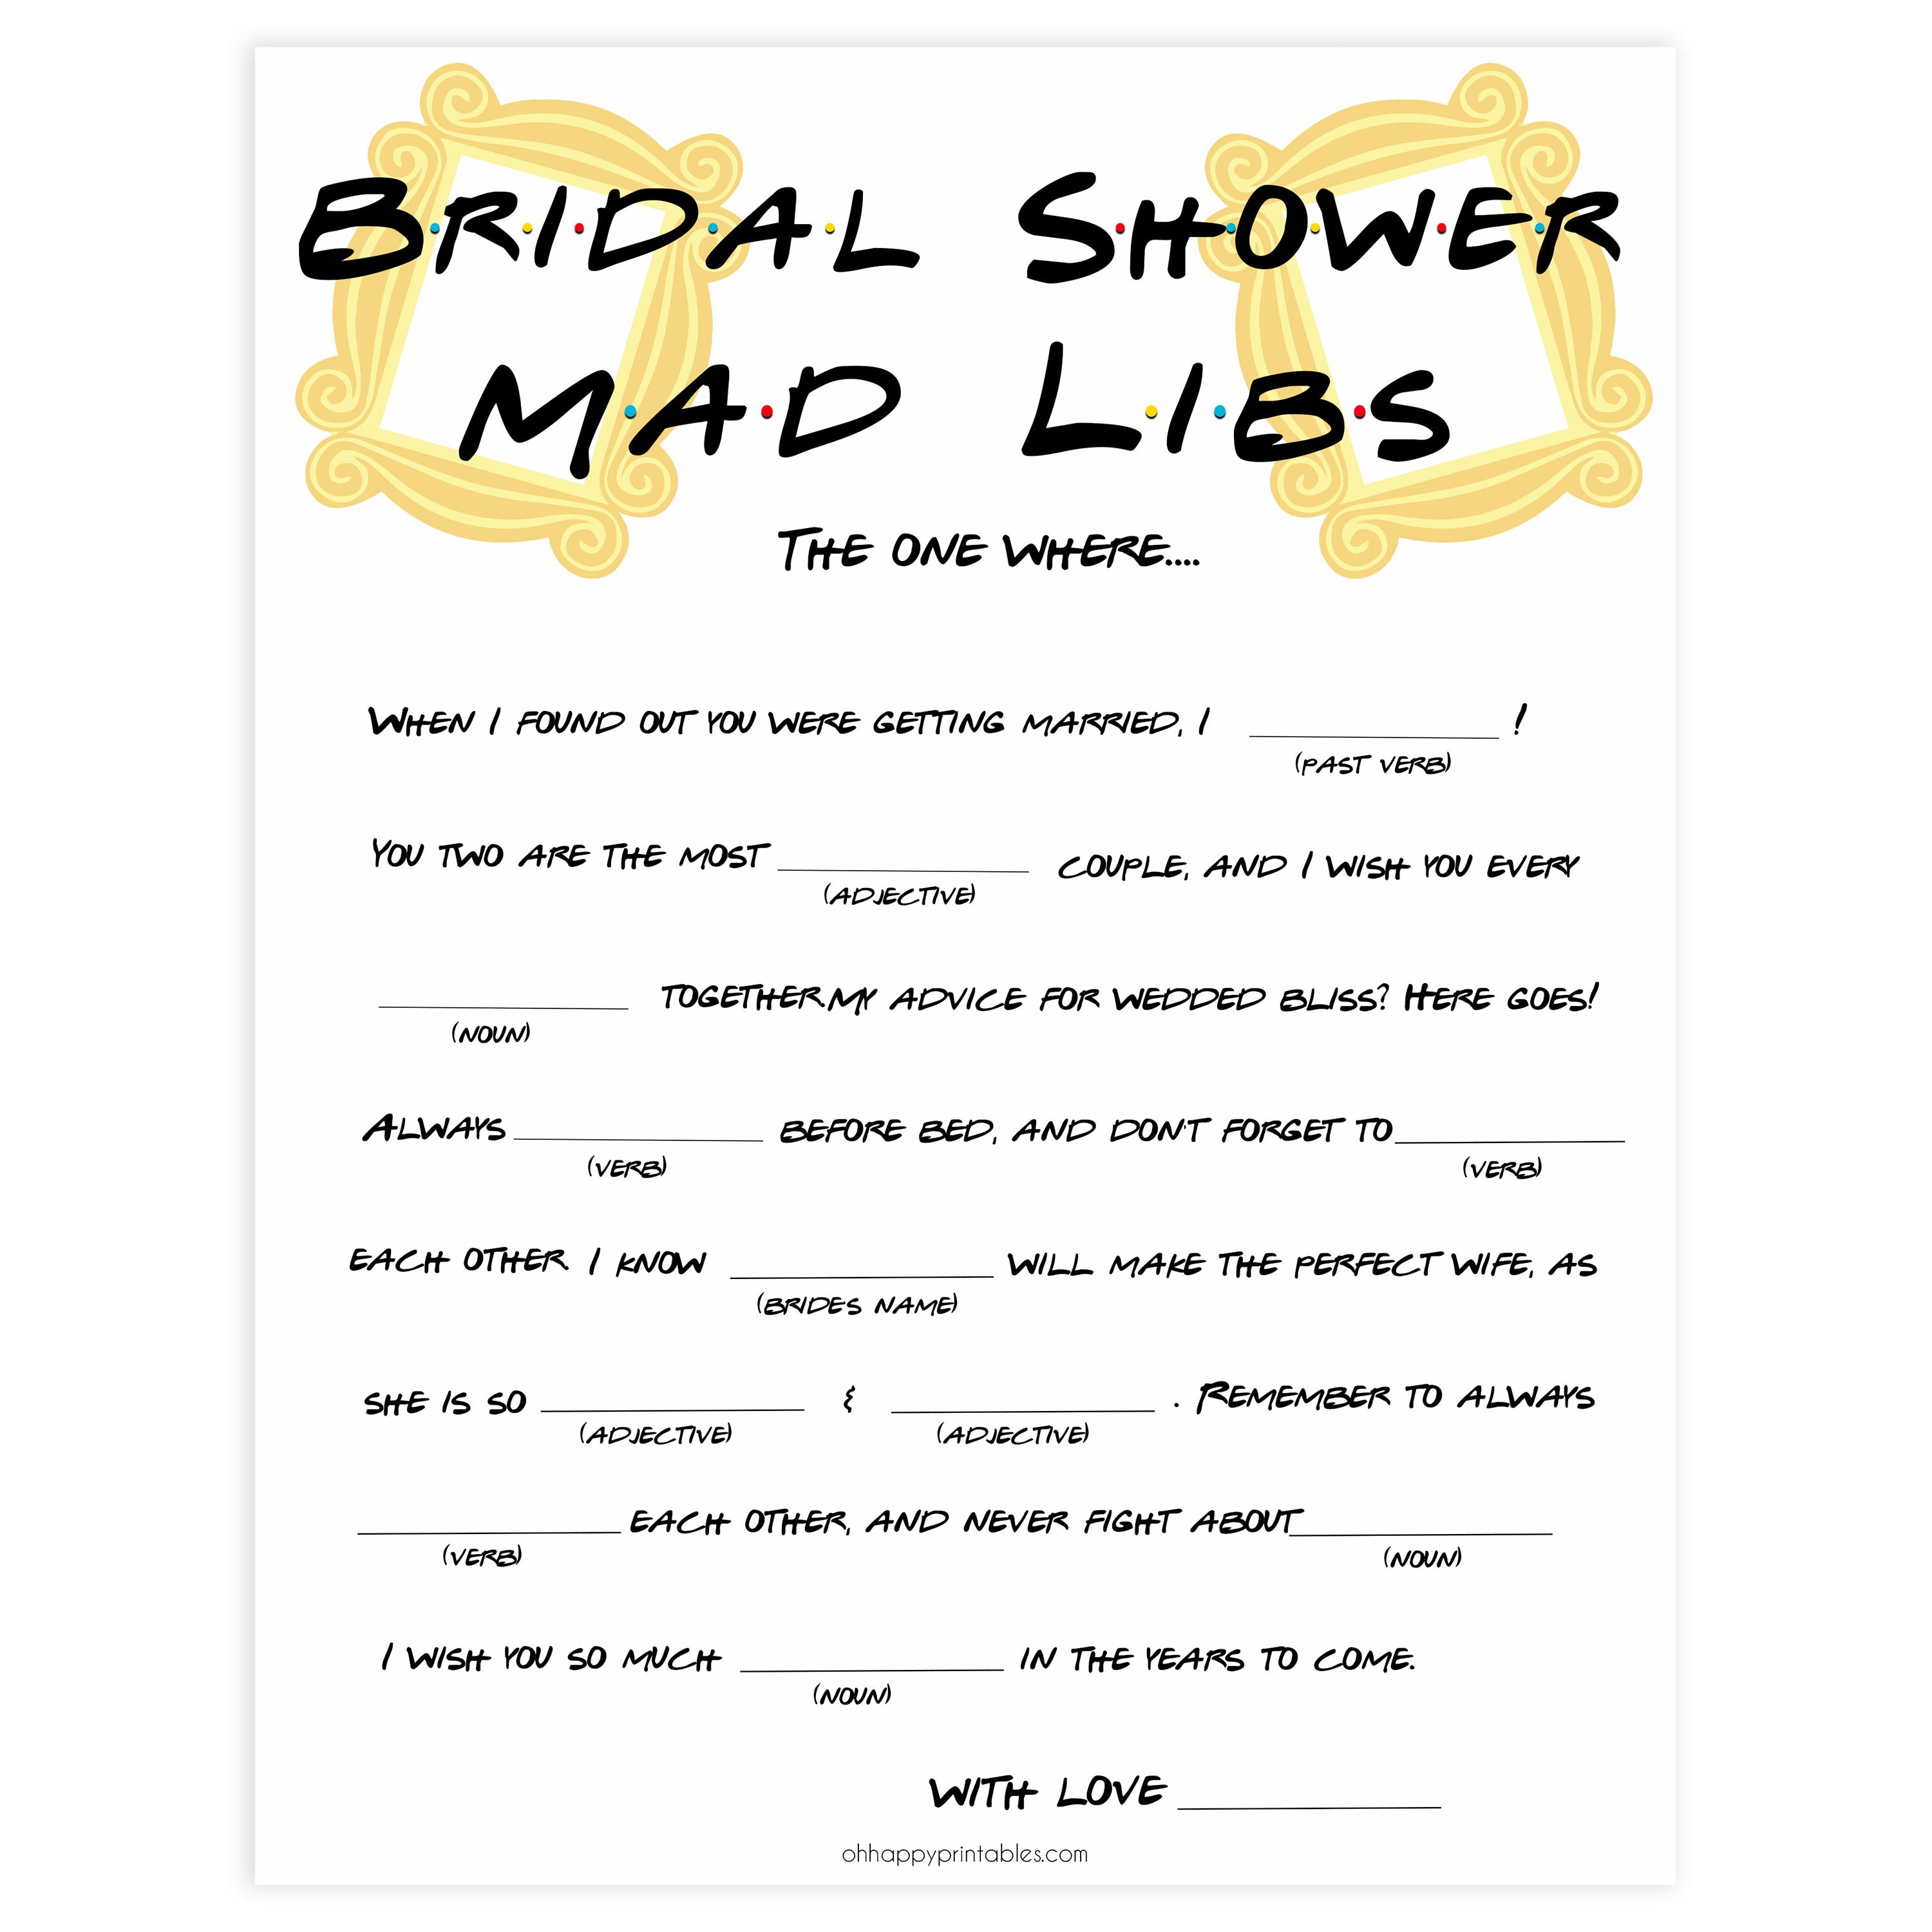 bridal madlibs mad libs game, Printable bridal shower games, friends bridal shower, friends bridal shower games, fun bridal shower games, bridal shower game ideas, friends bridal shower